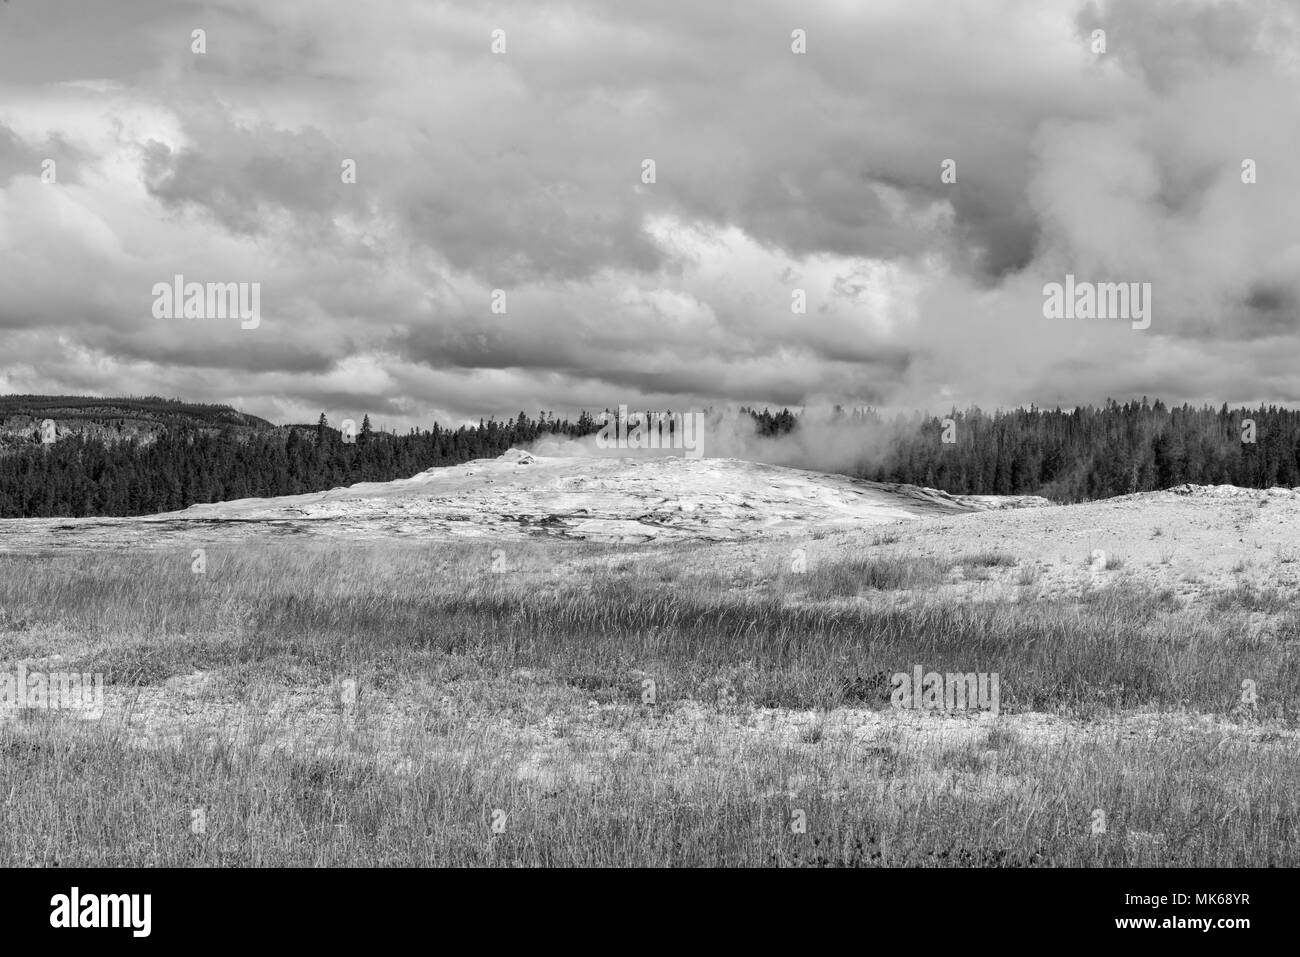 Geyser mound nel mezzo del campo di vaporizzazione, sotto il cielo nuvoloso. Immagine in bianco e nero. Foto Stock